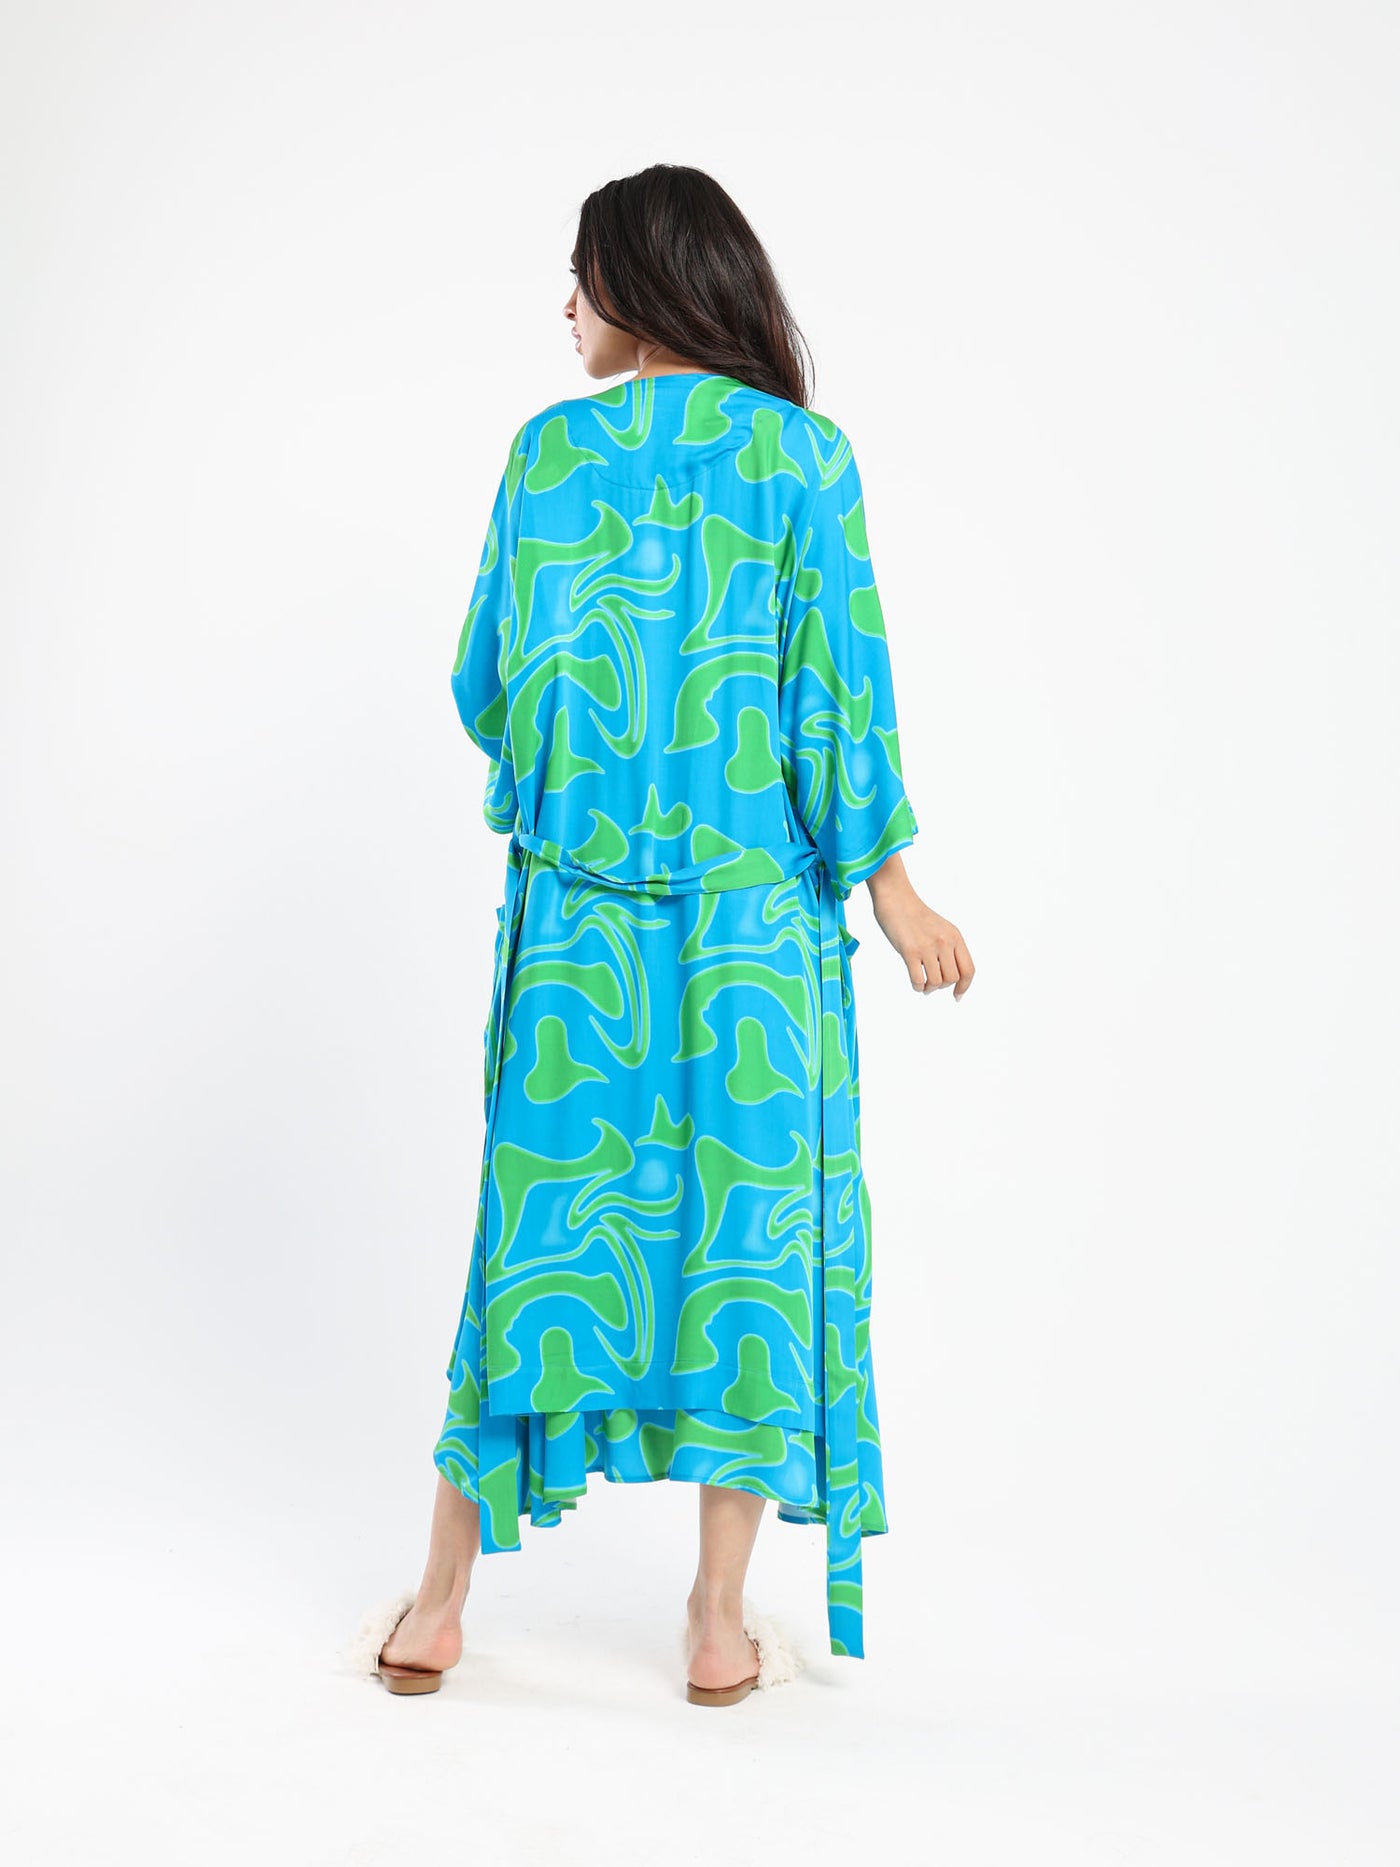 Kimono - Printed - Long Length